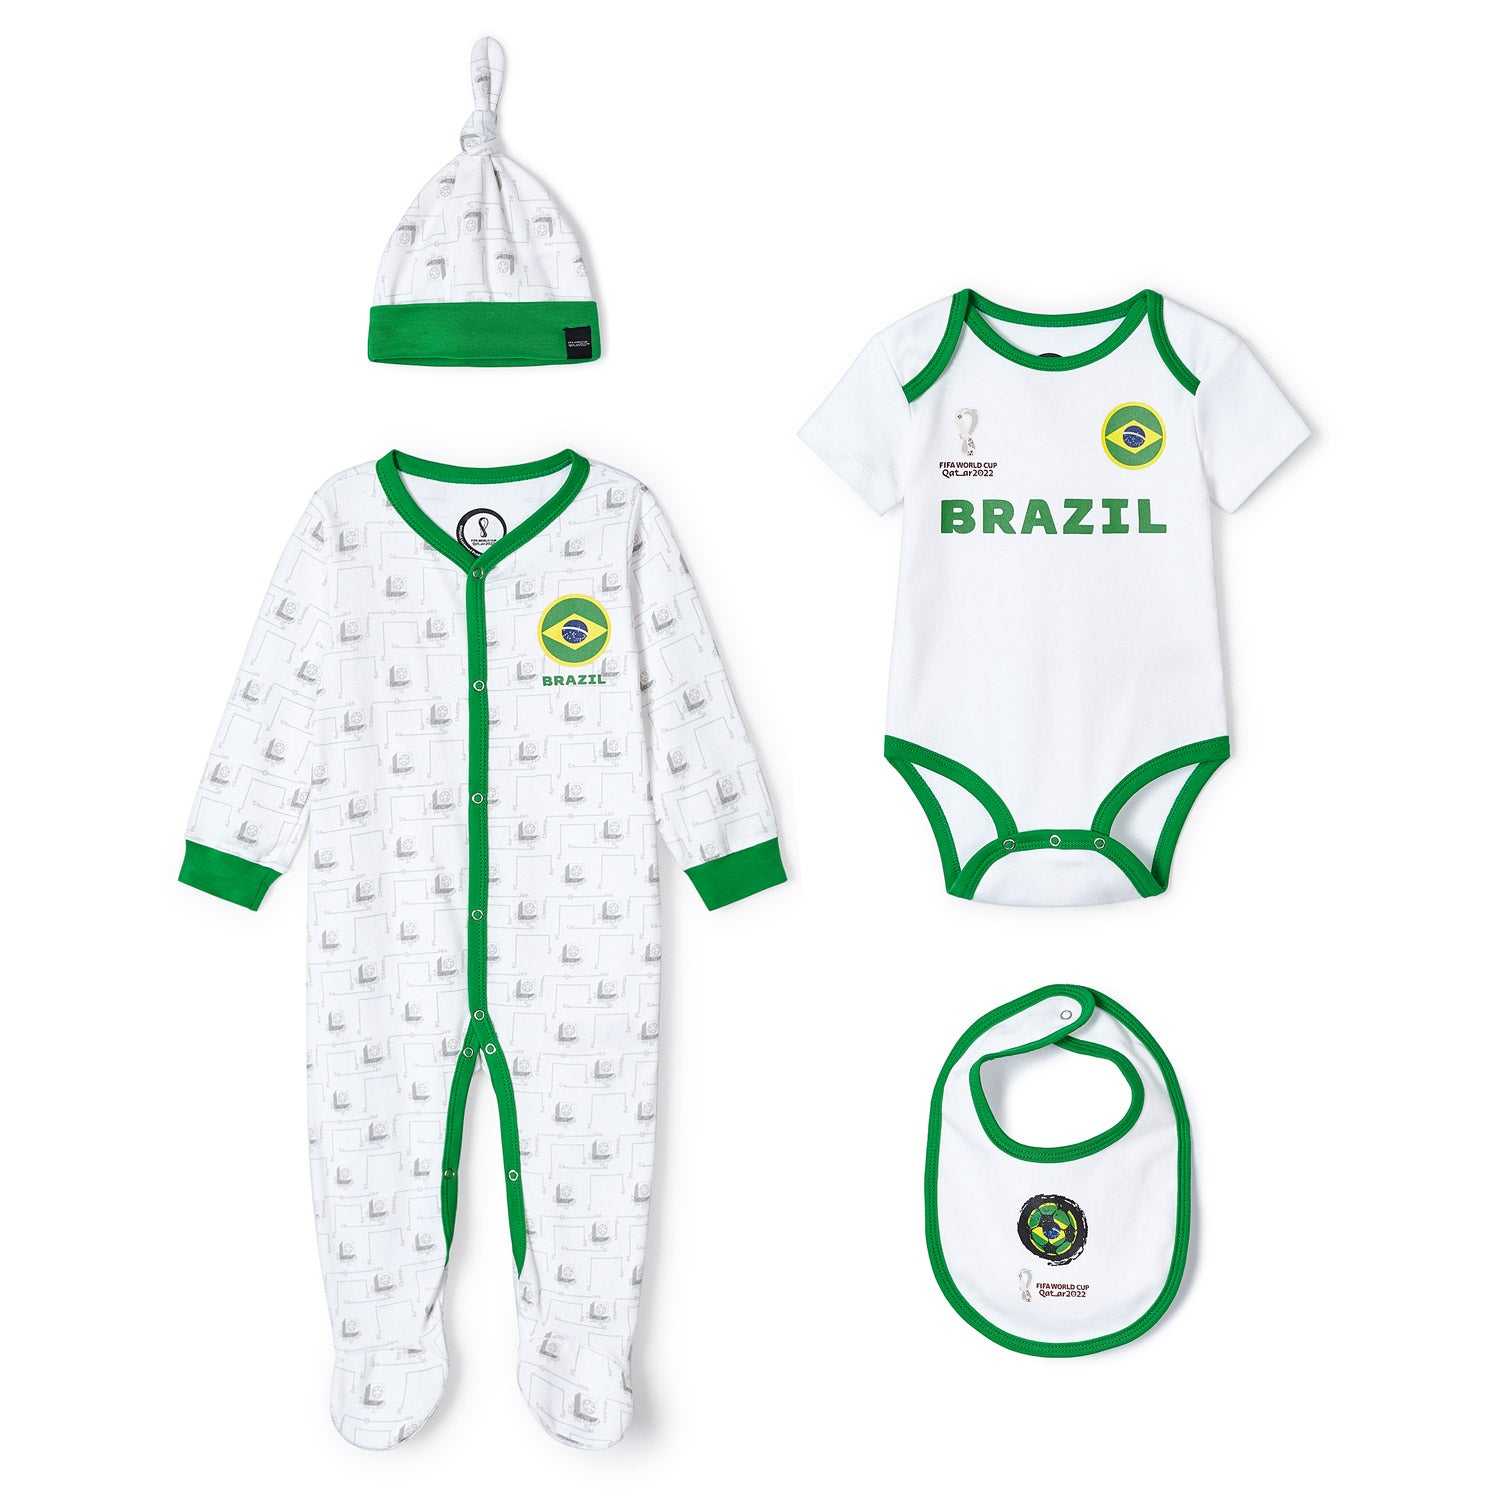 2022 World Cup Brazil White Romper - Infant/Toddler